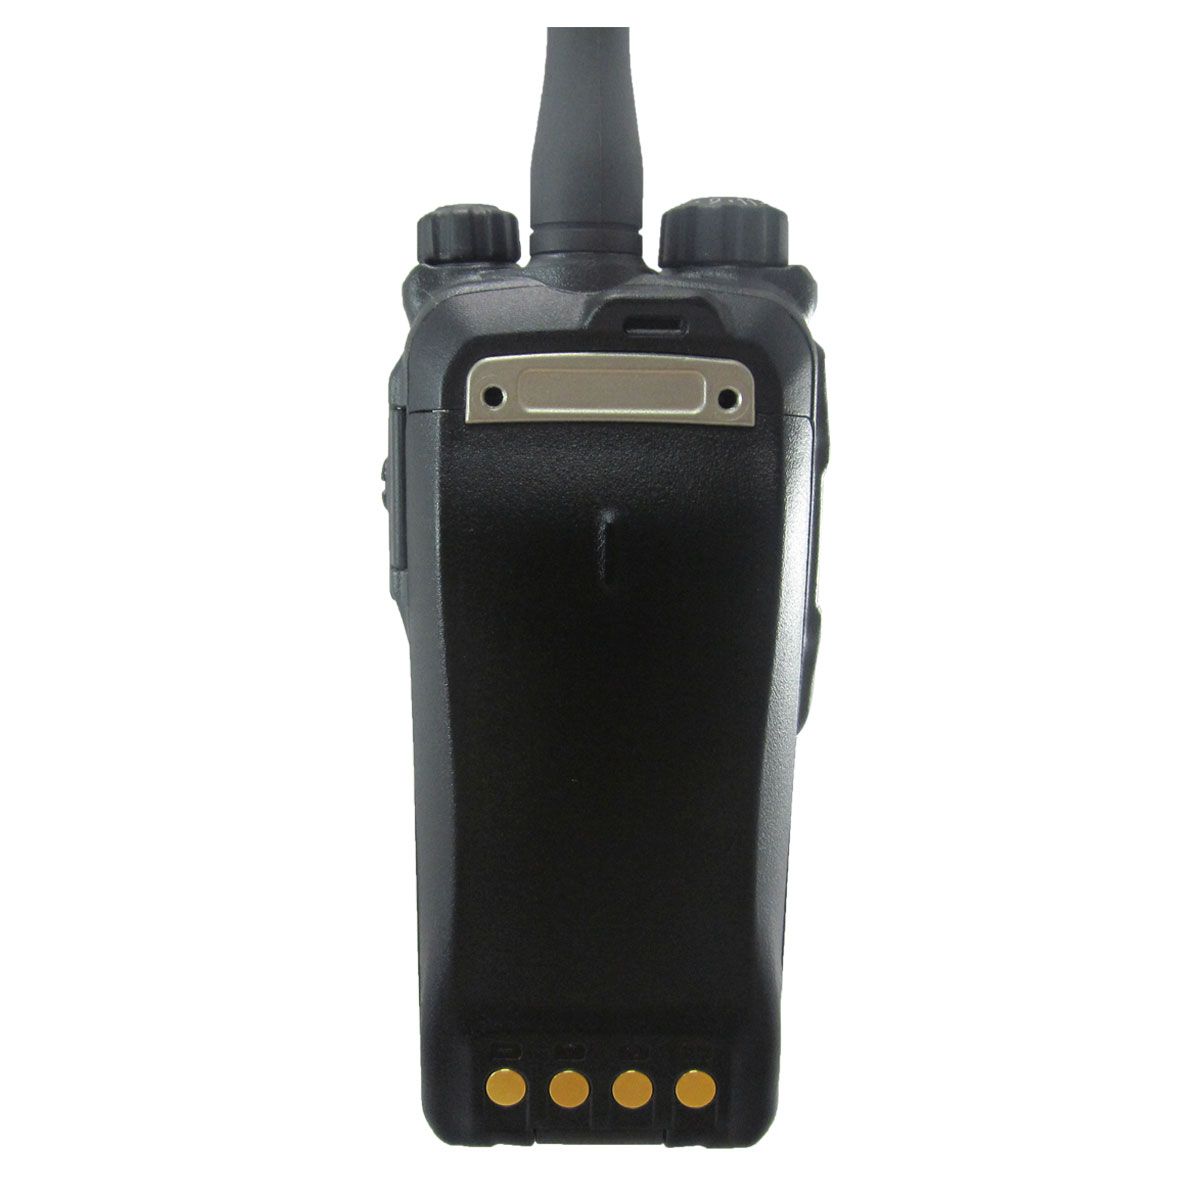 Radio Hytera PD786 Digital PD786-V VHF 136-174 MHz